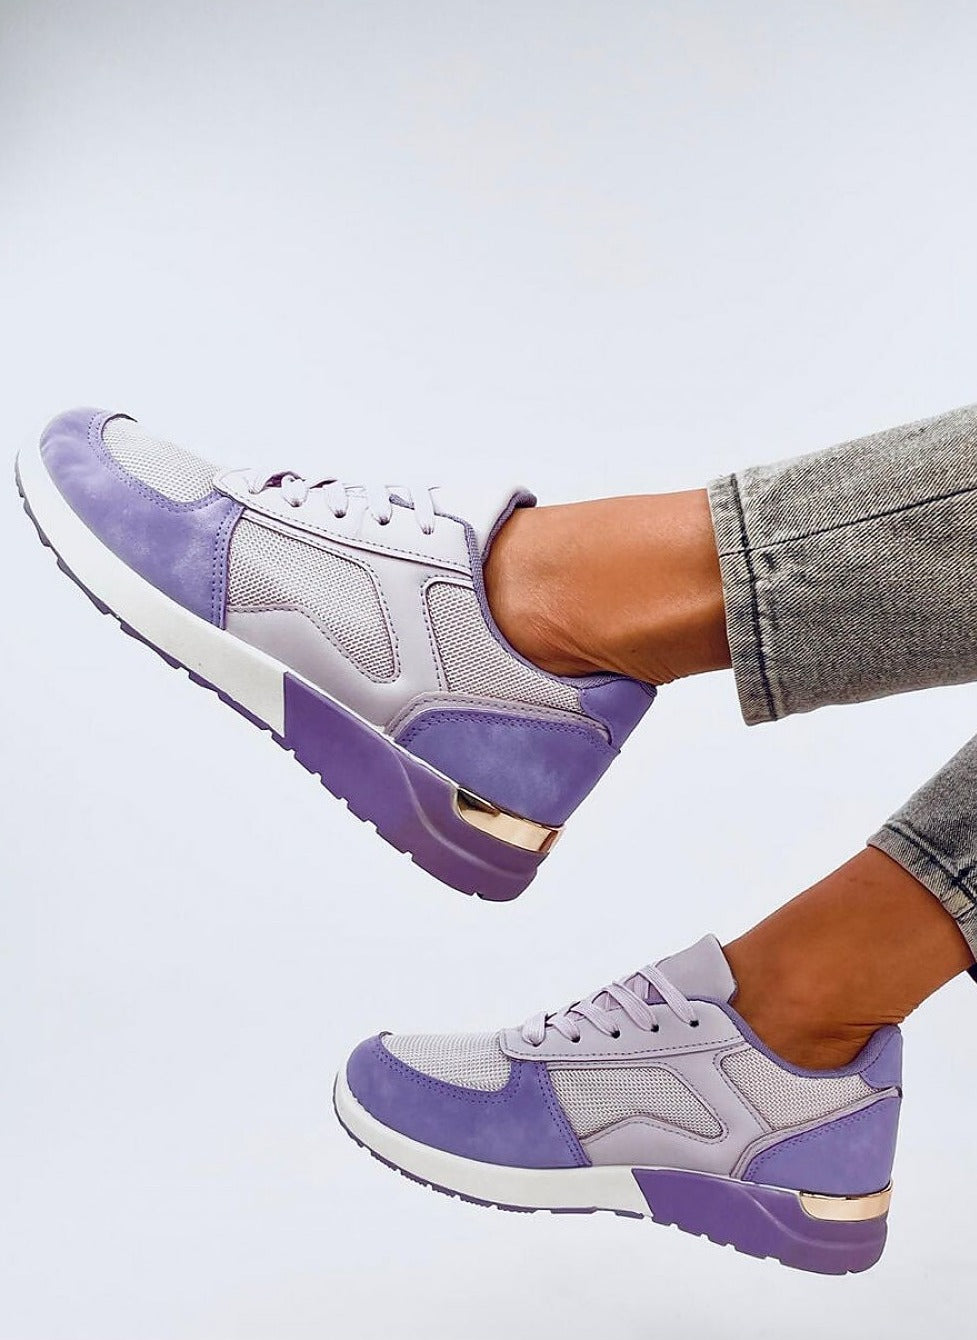 TEEK - Lavender Purple Pedaled Sneakers SHOES TEEK MH   